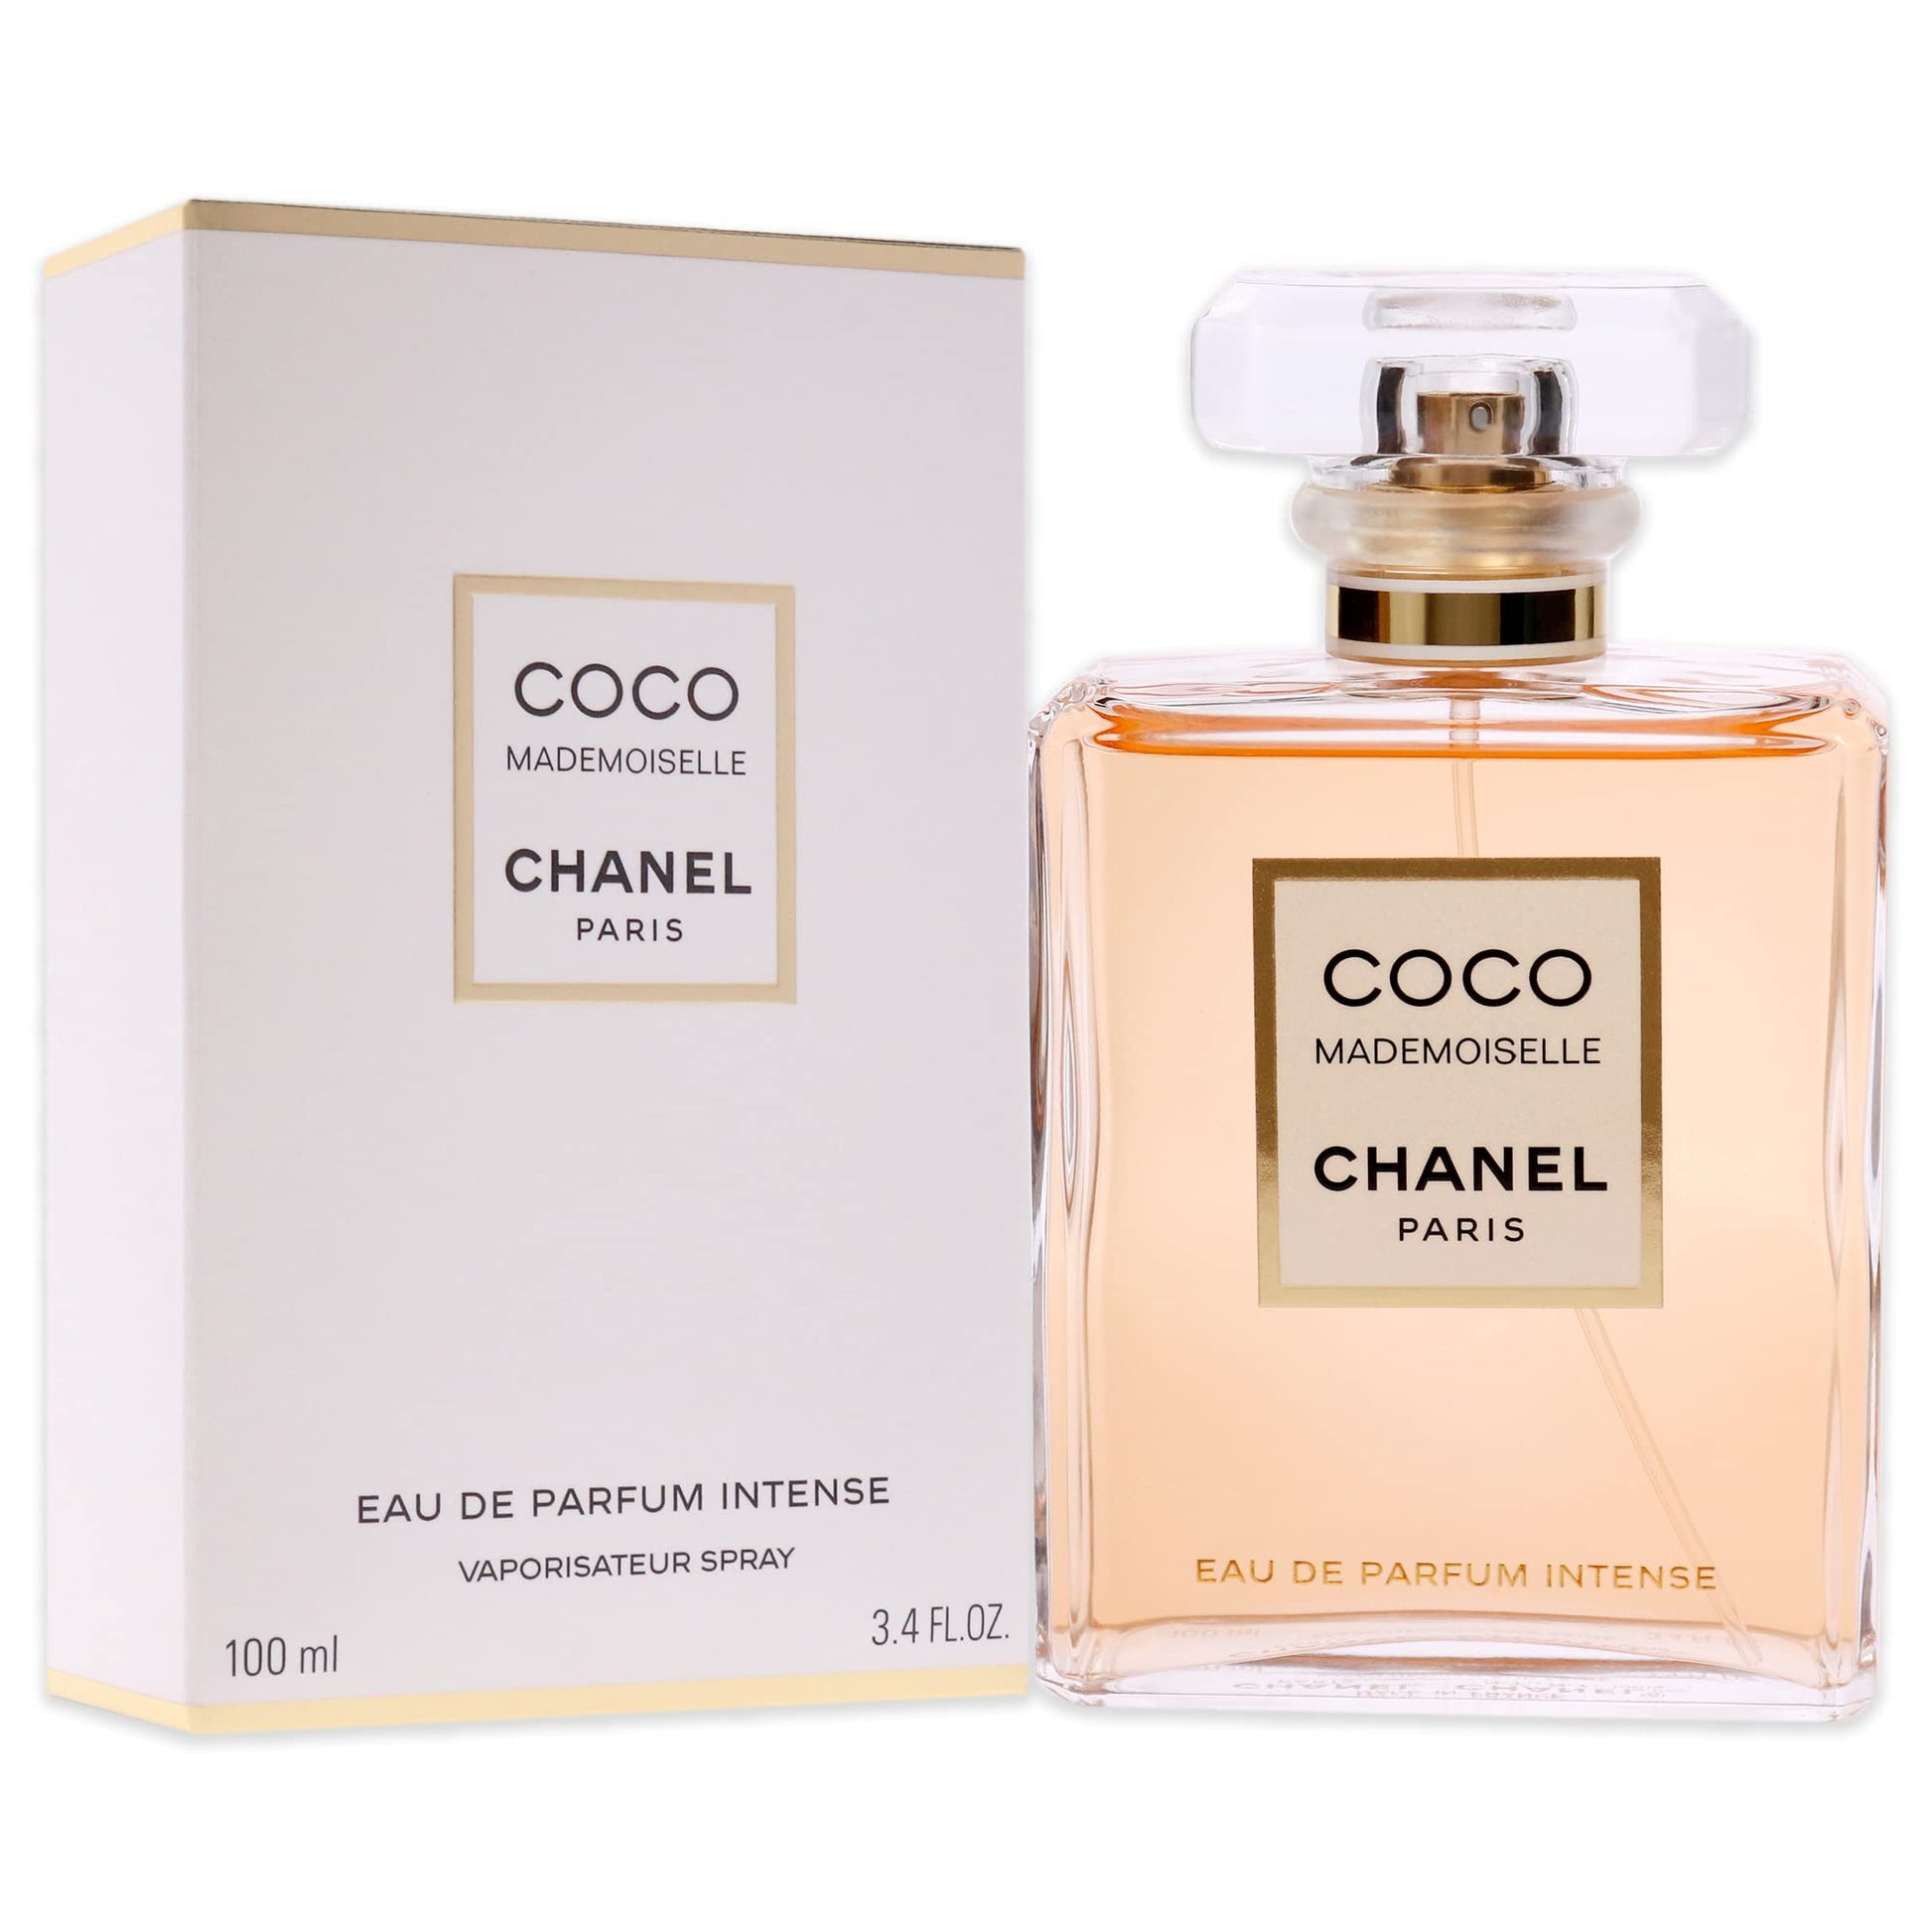 Chanel Coco 60ml - Eau de Parfum for Women 